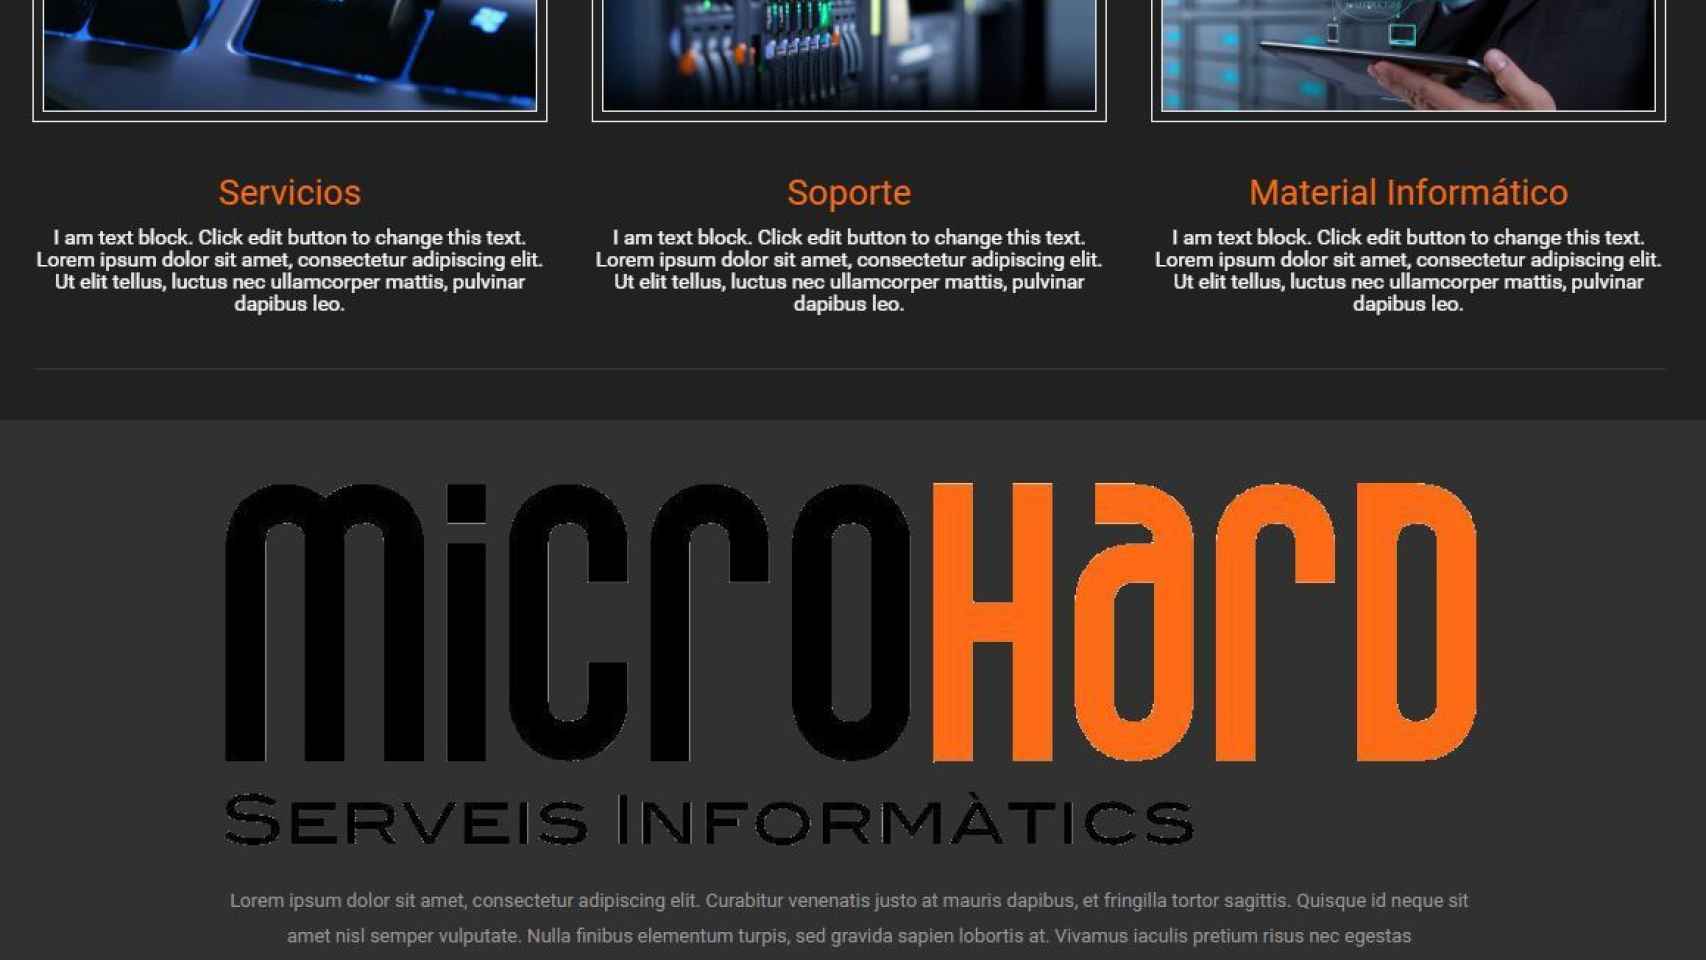 Captura de la web de la empresa barcelonesa MicroHard.